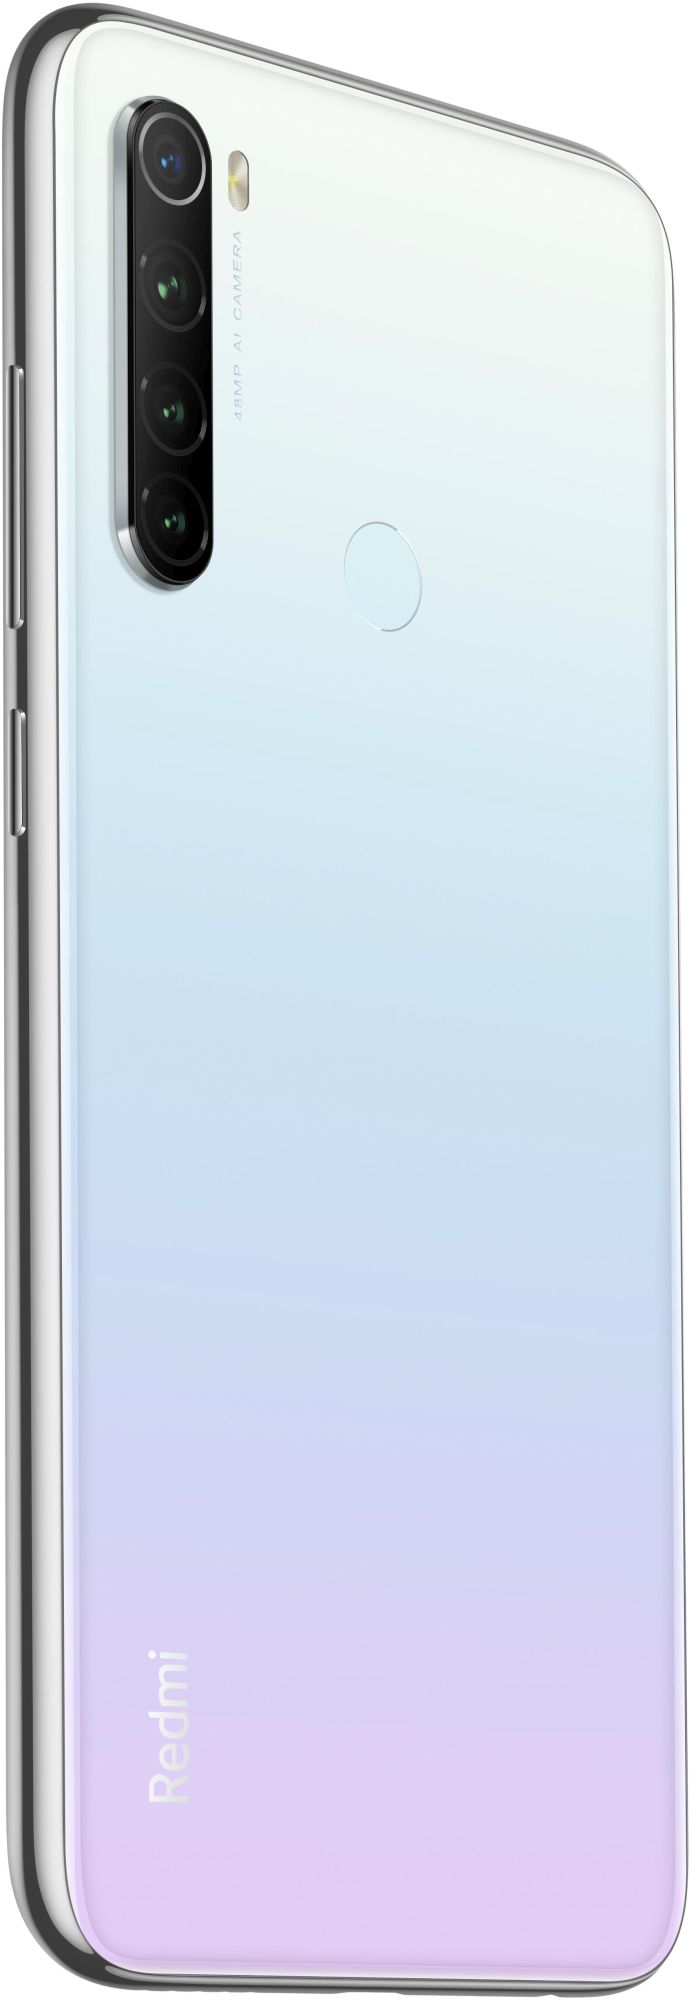 Xiaomi Redmi Note 8T 64GB white